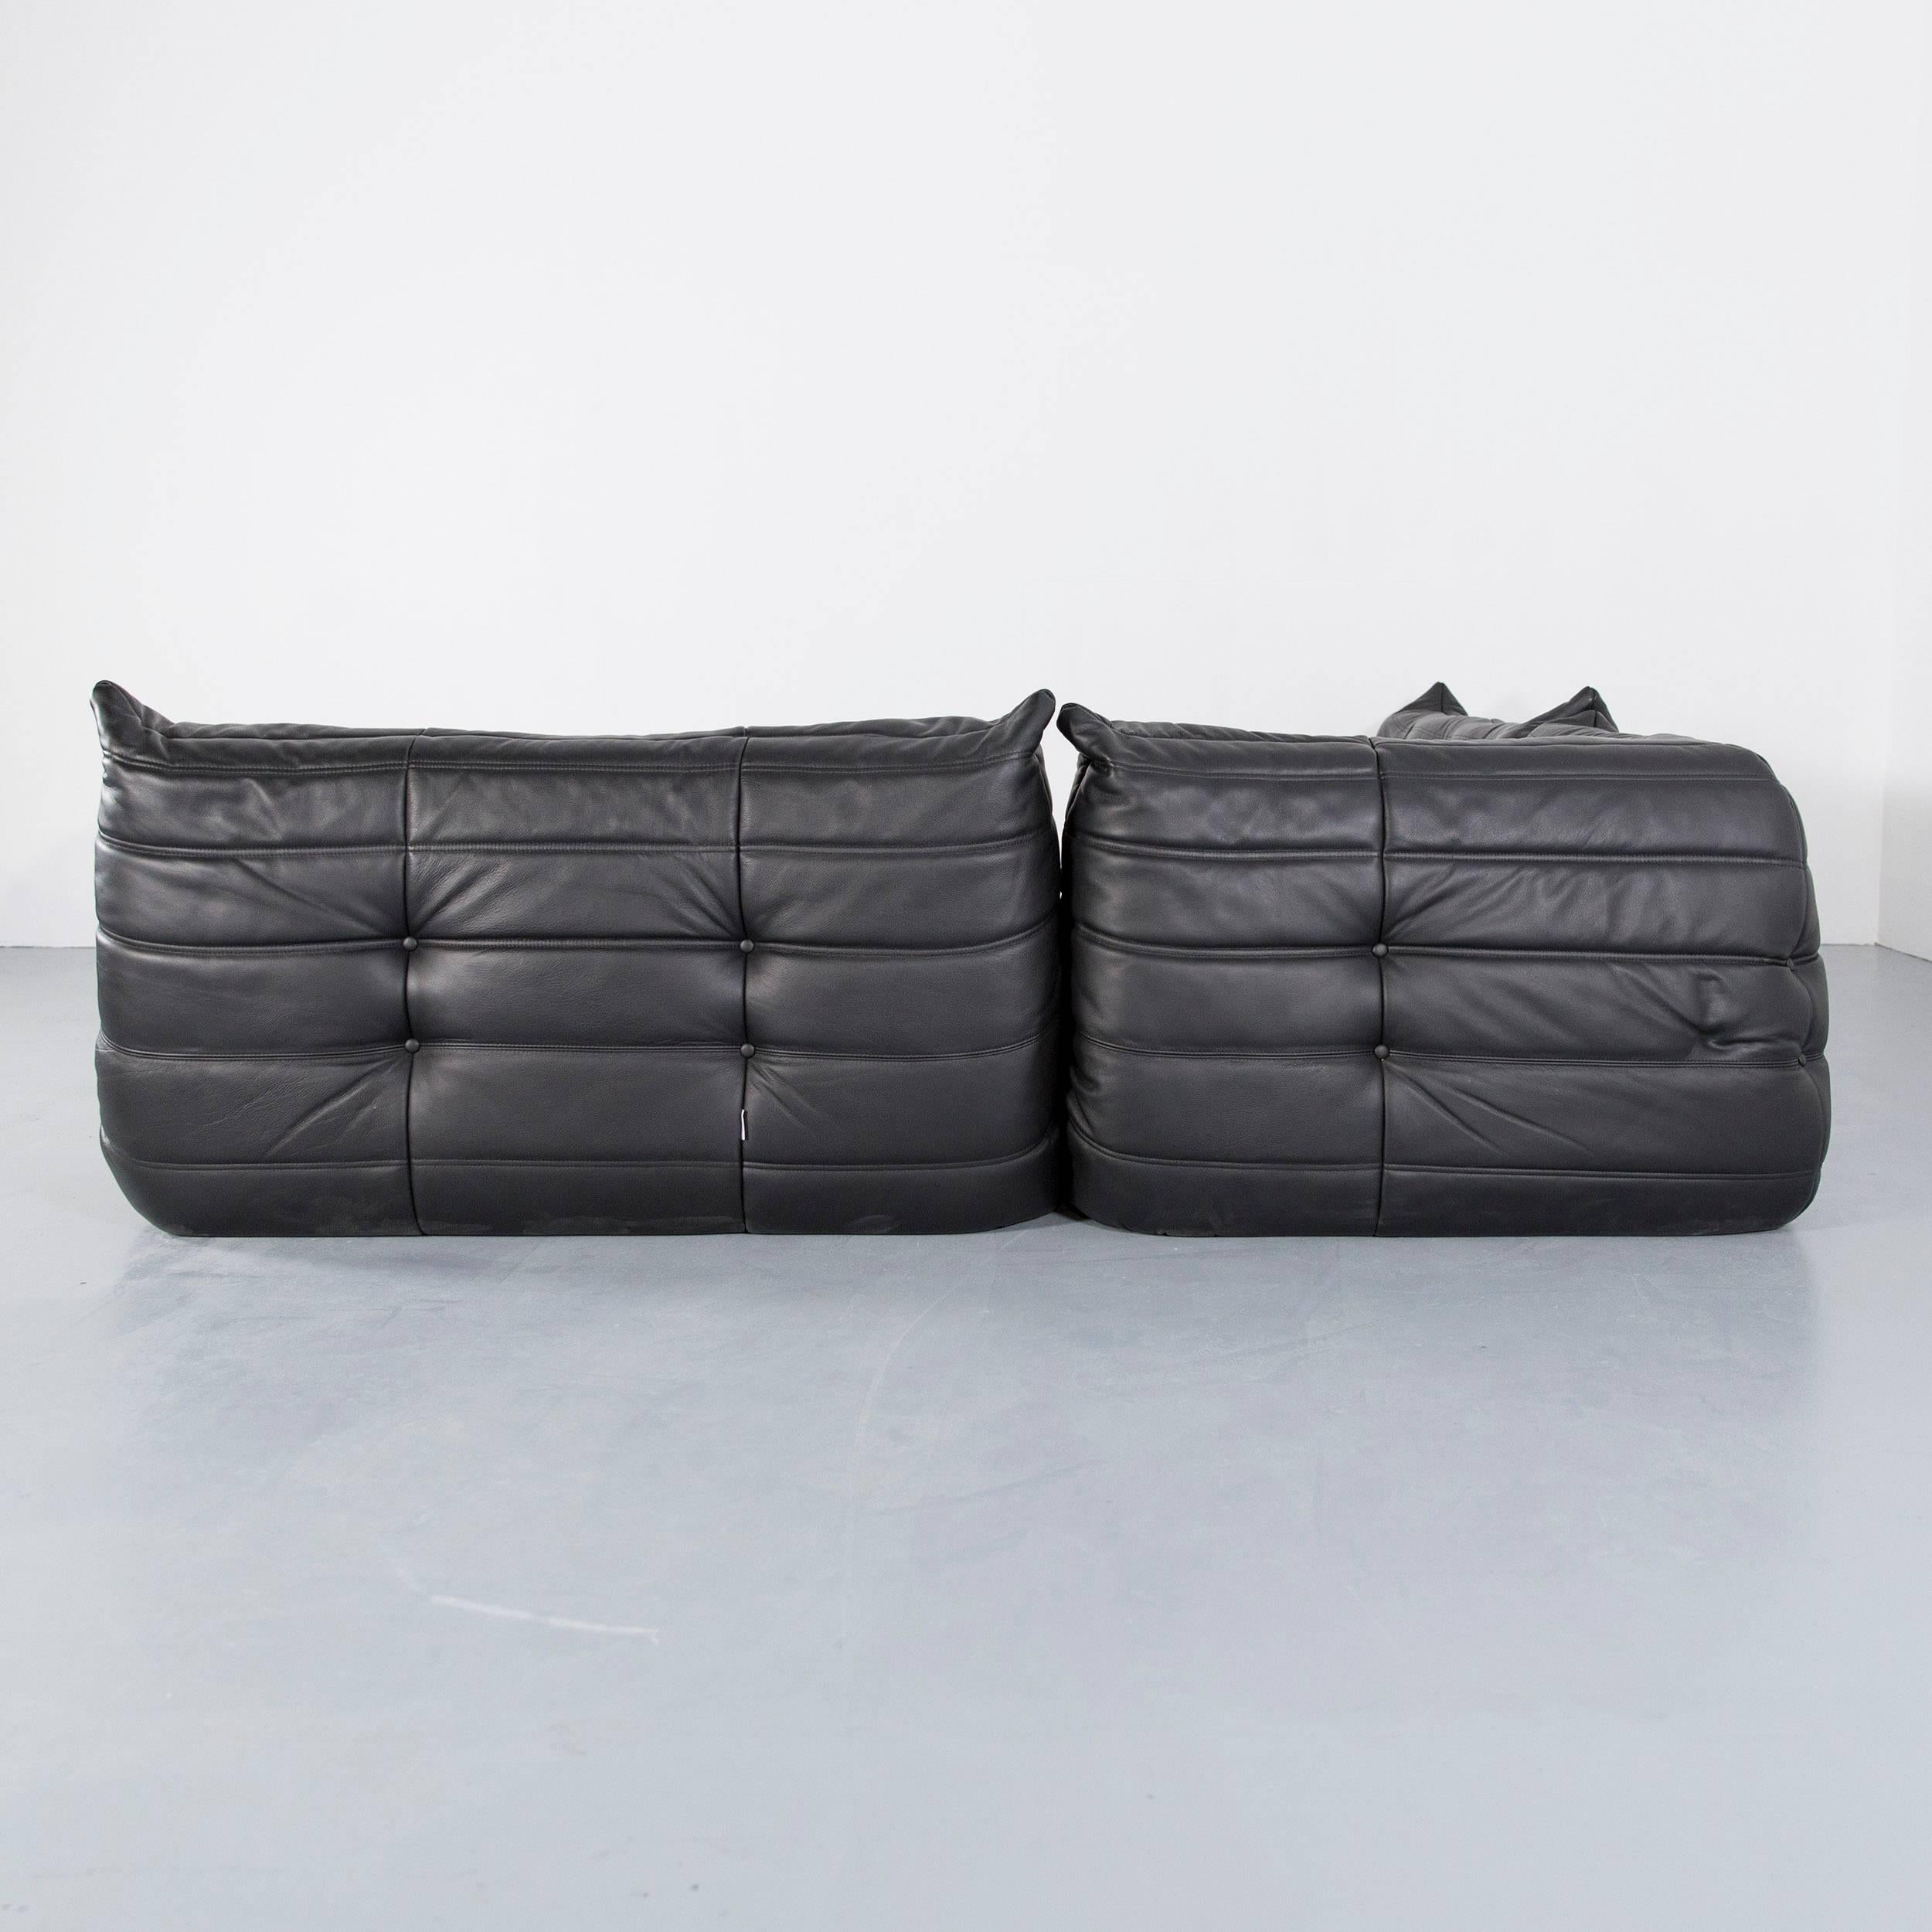 Ligne Rose Togo Designer Sofa Black Leather Two-Seat Retro Classic Sofa Couch 3